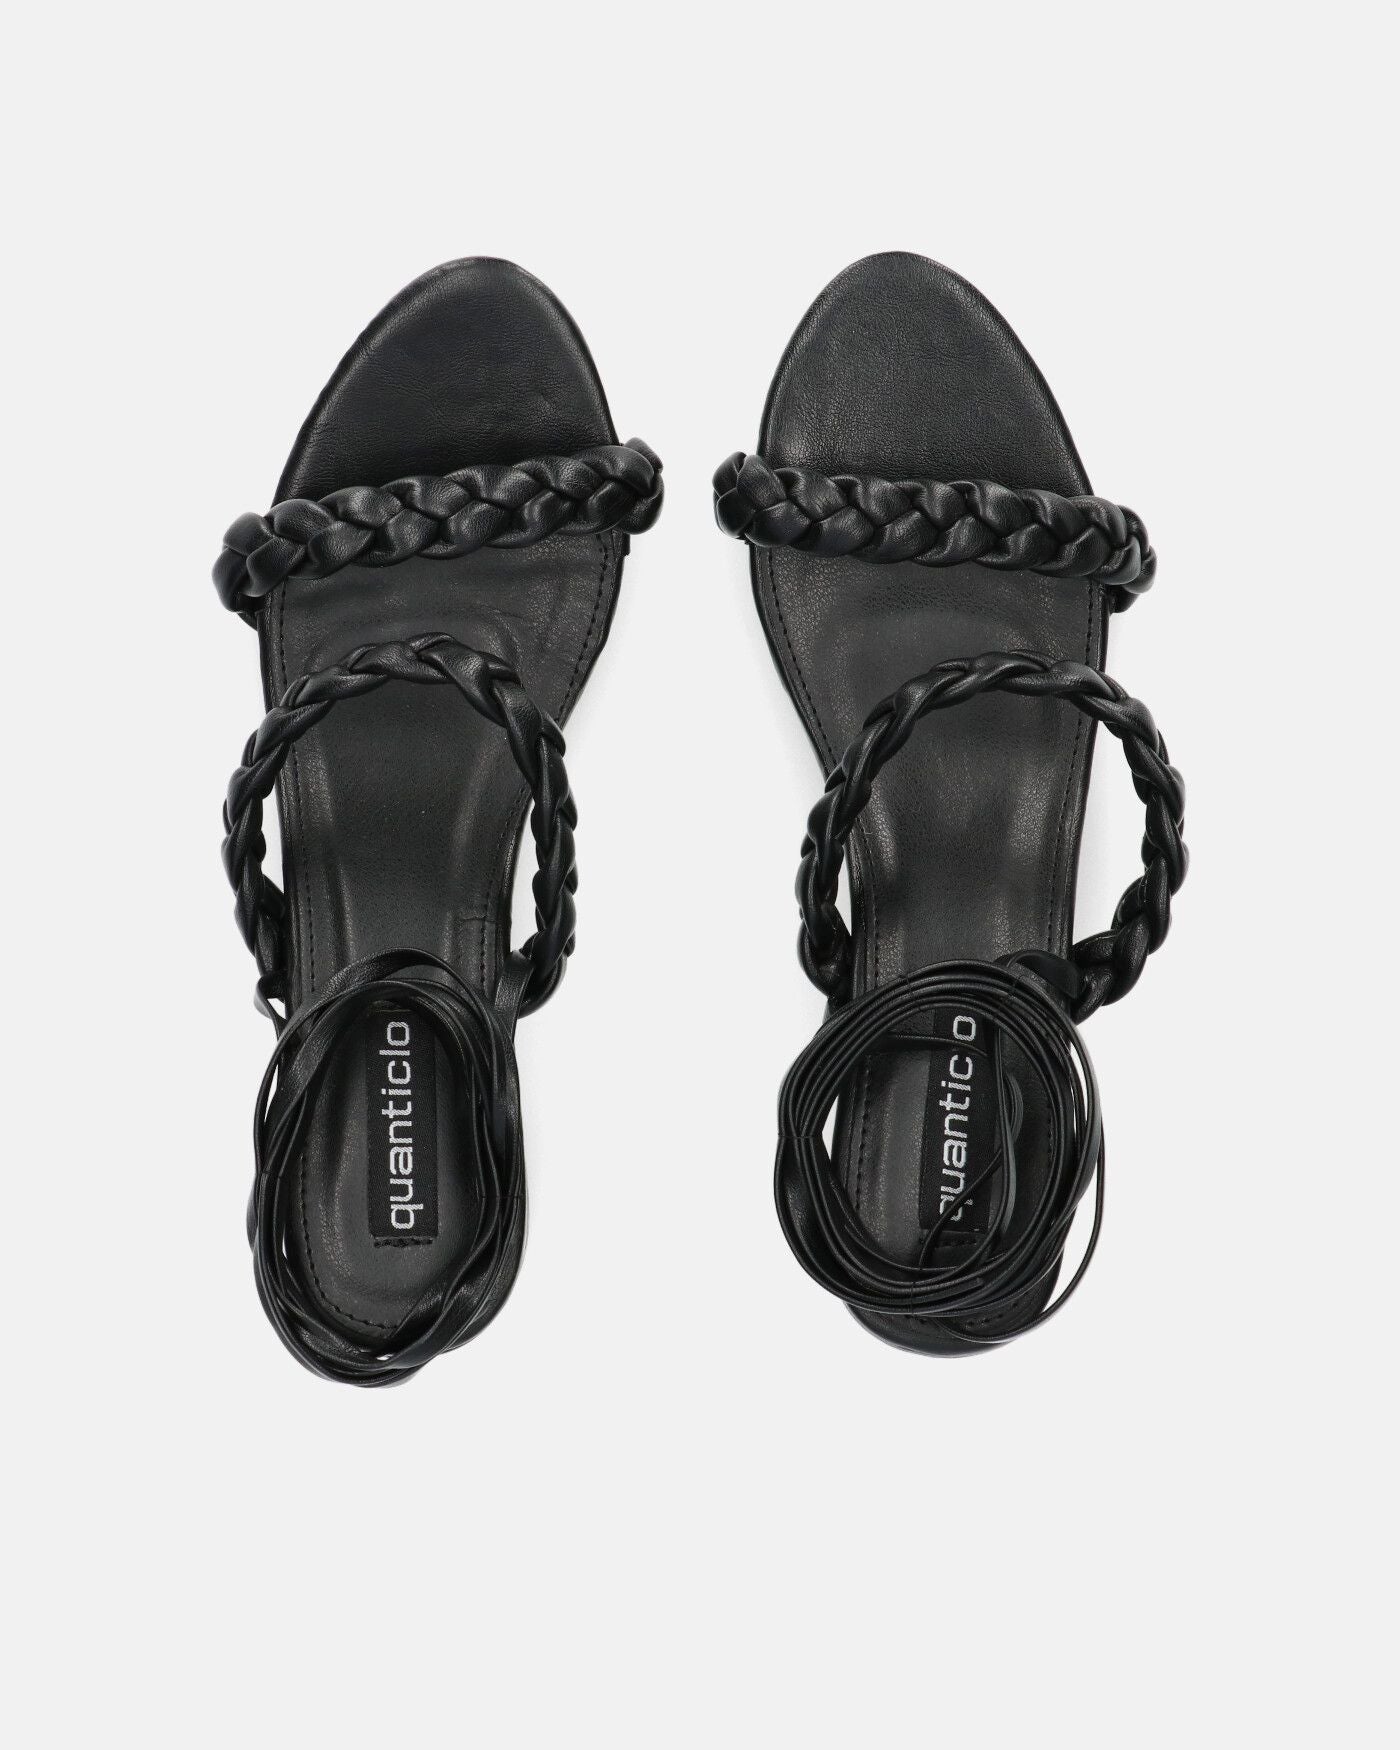 TARISAI - sandalias negras de piel sintética con cordones